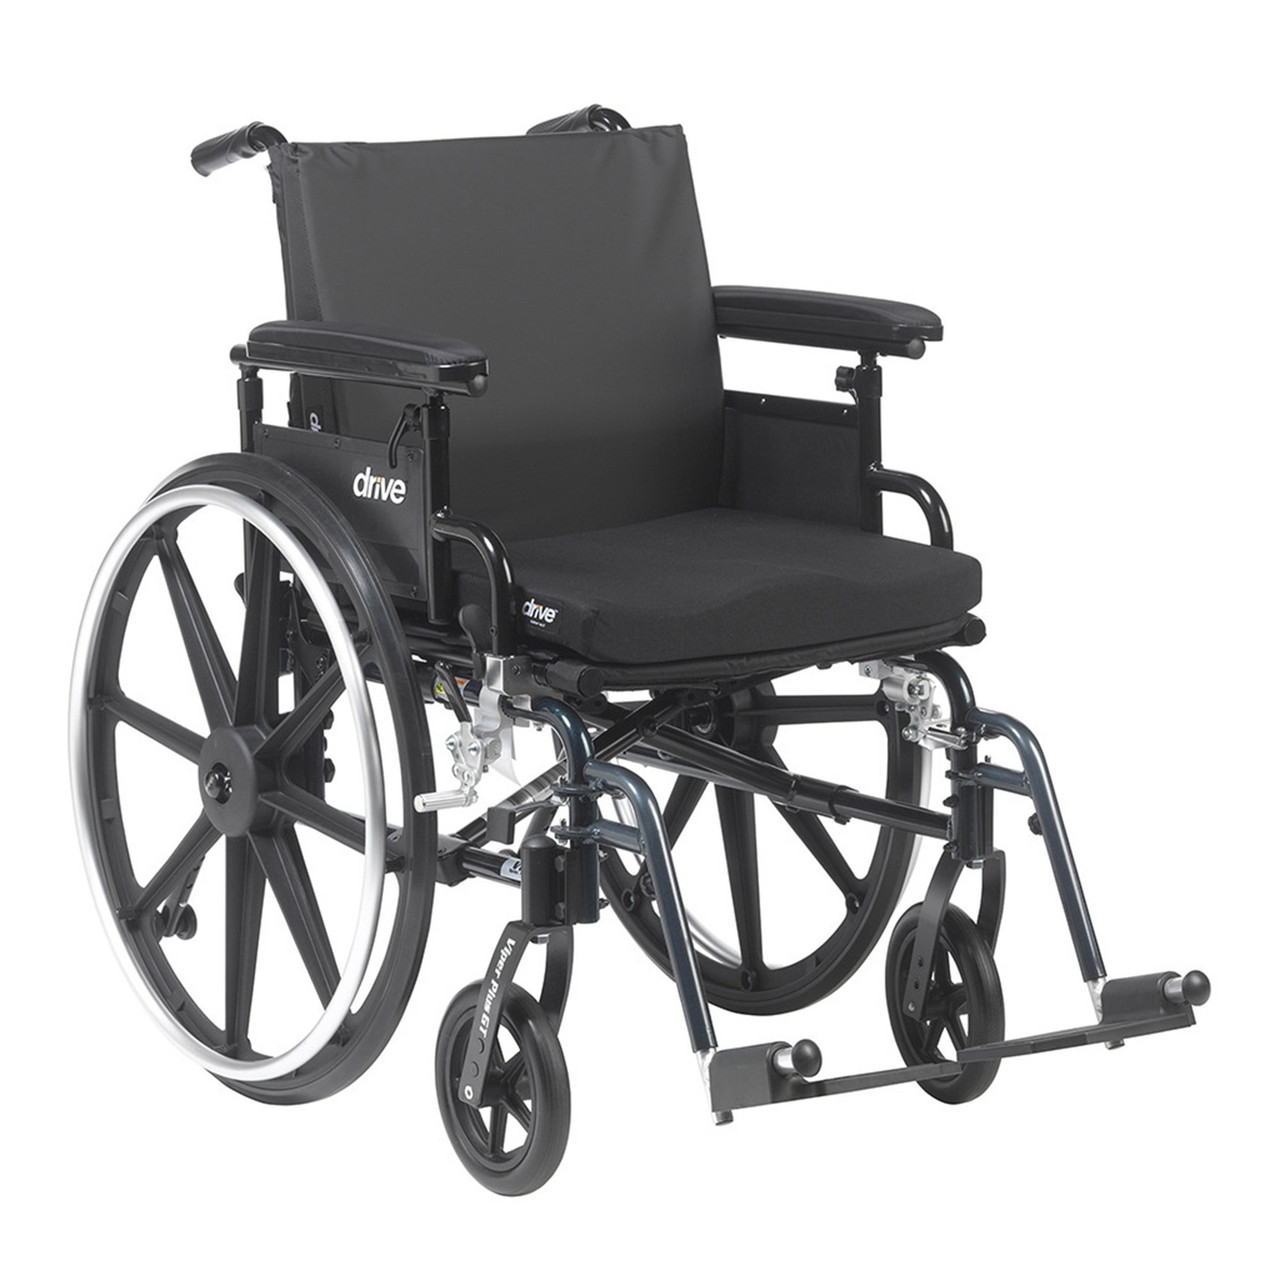 Buy Molded Foam General Use Wheelchair Cushion [Use FSA $]